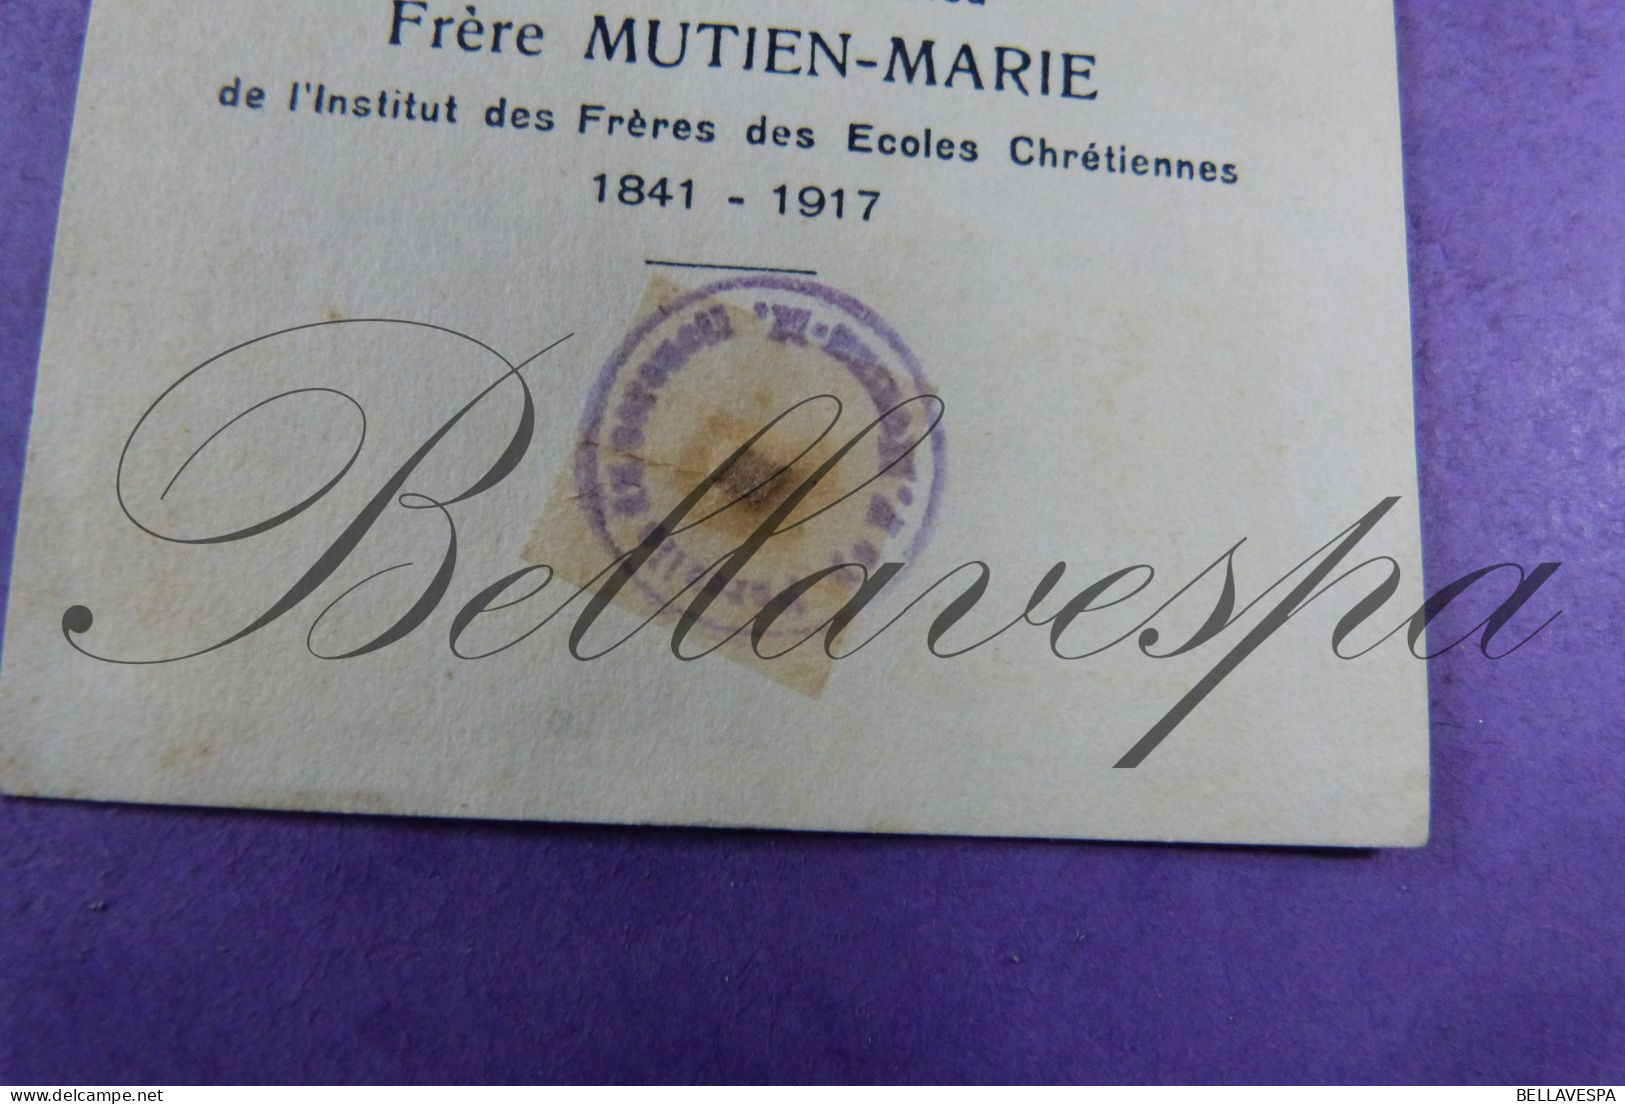 Frère MUTIEN-MARIE 1841-1917 Relique  Relique 1930 - Devotion Images